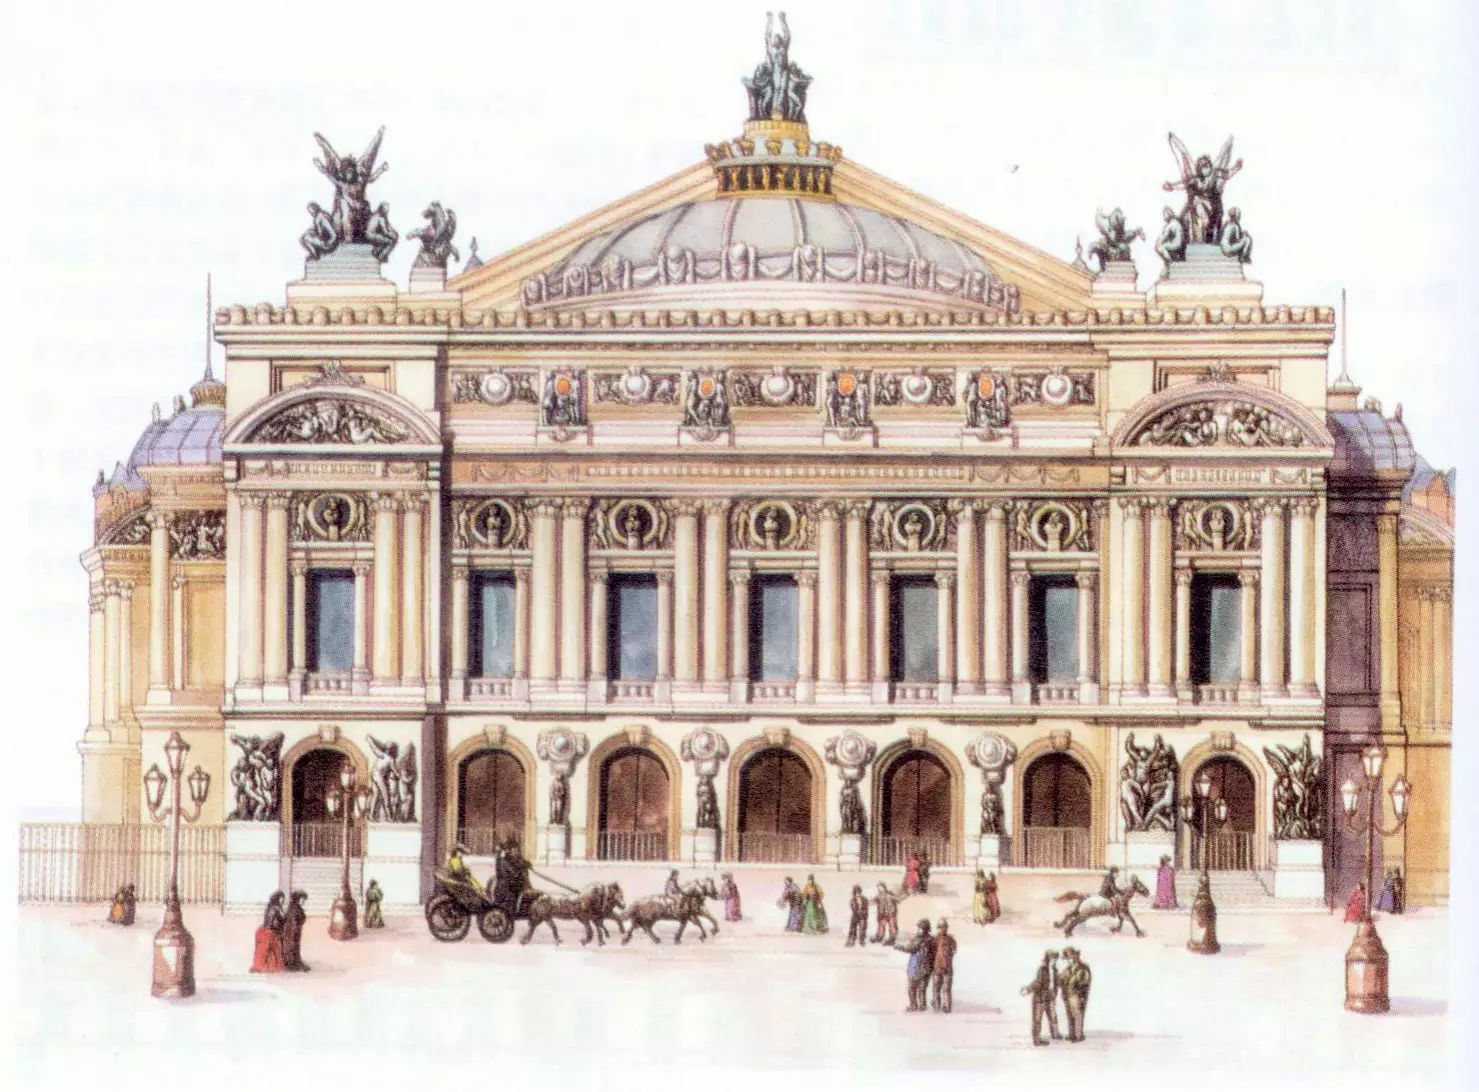 古典主义作为一个独立的流派名称,最早出现于十七世纪中叶欧洲的建筑